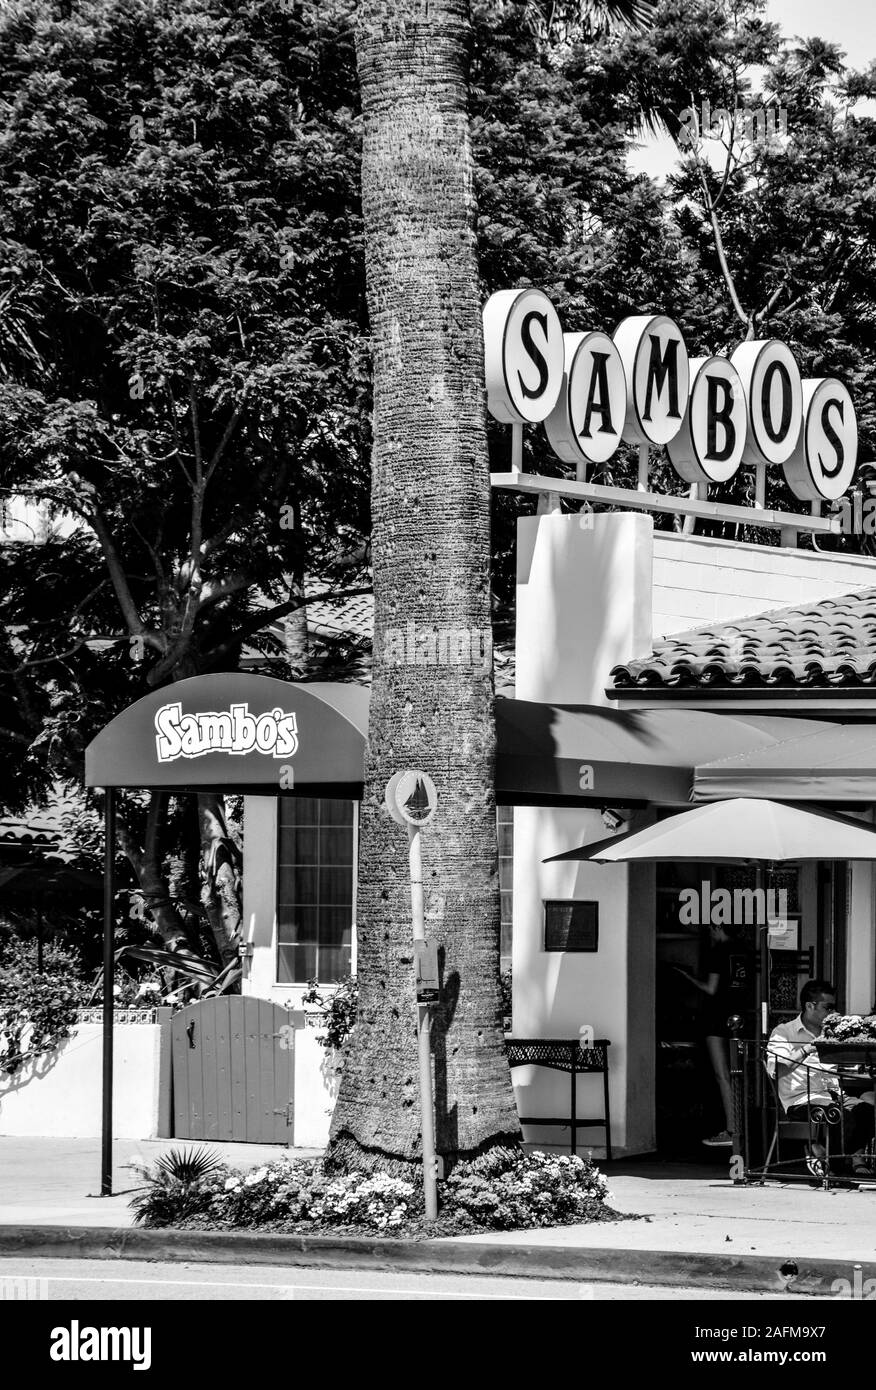 Les gens à manger sur la terrasse en Sambos restaurant, le dernier de la chaîne de restaurants Sambos à rester en affaires, situé à Santa Barbara, CA, dans B&W Banque D'Images